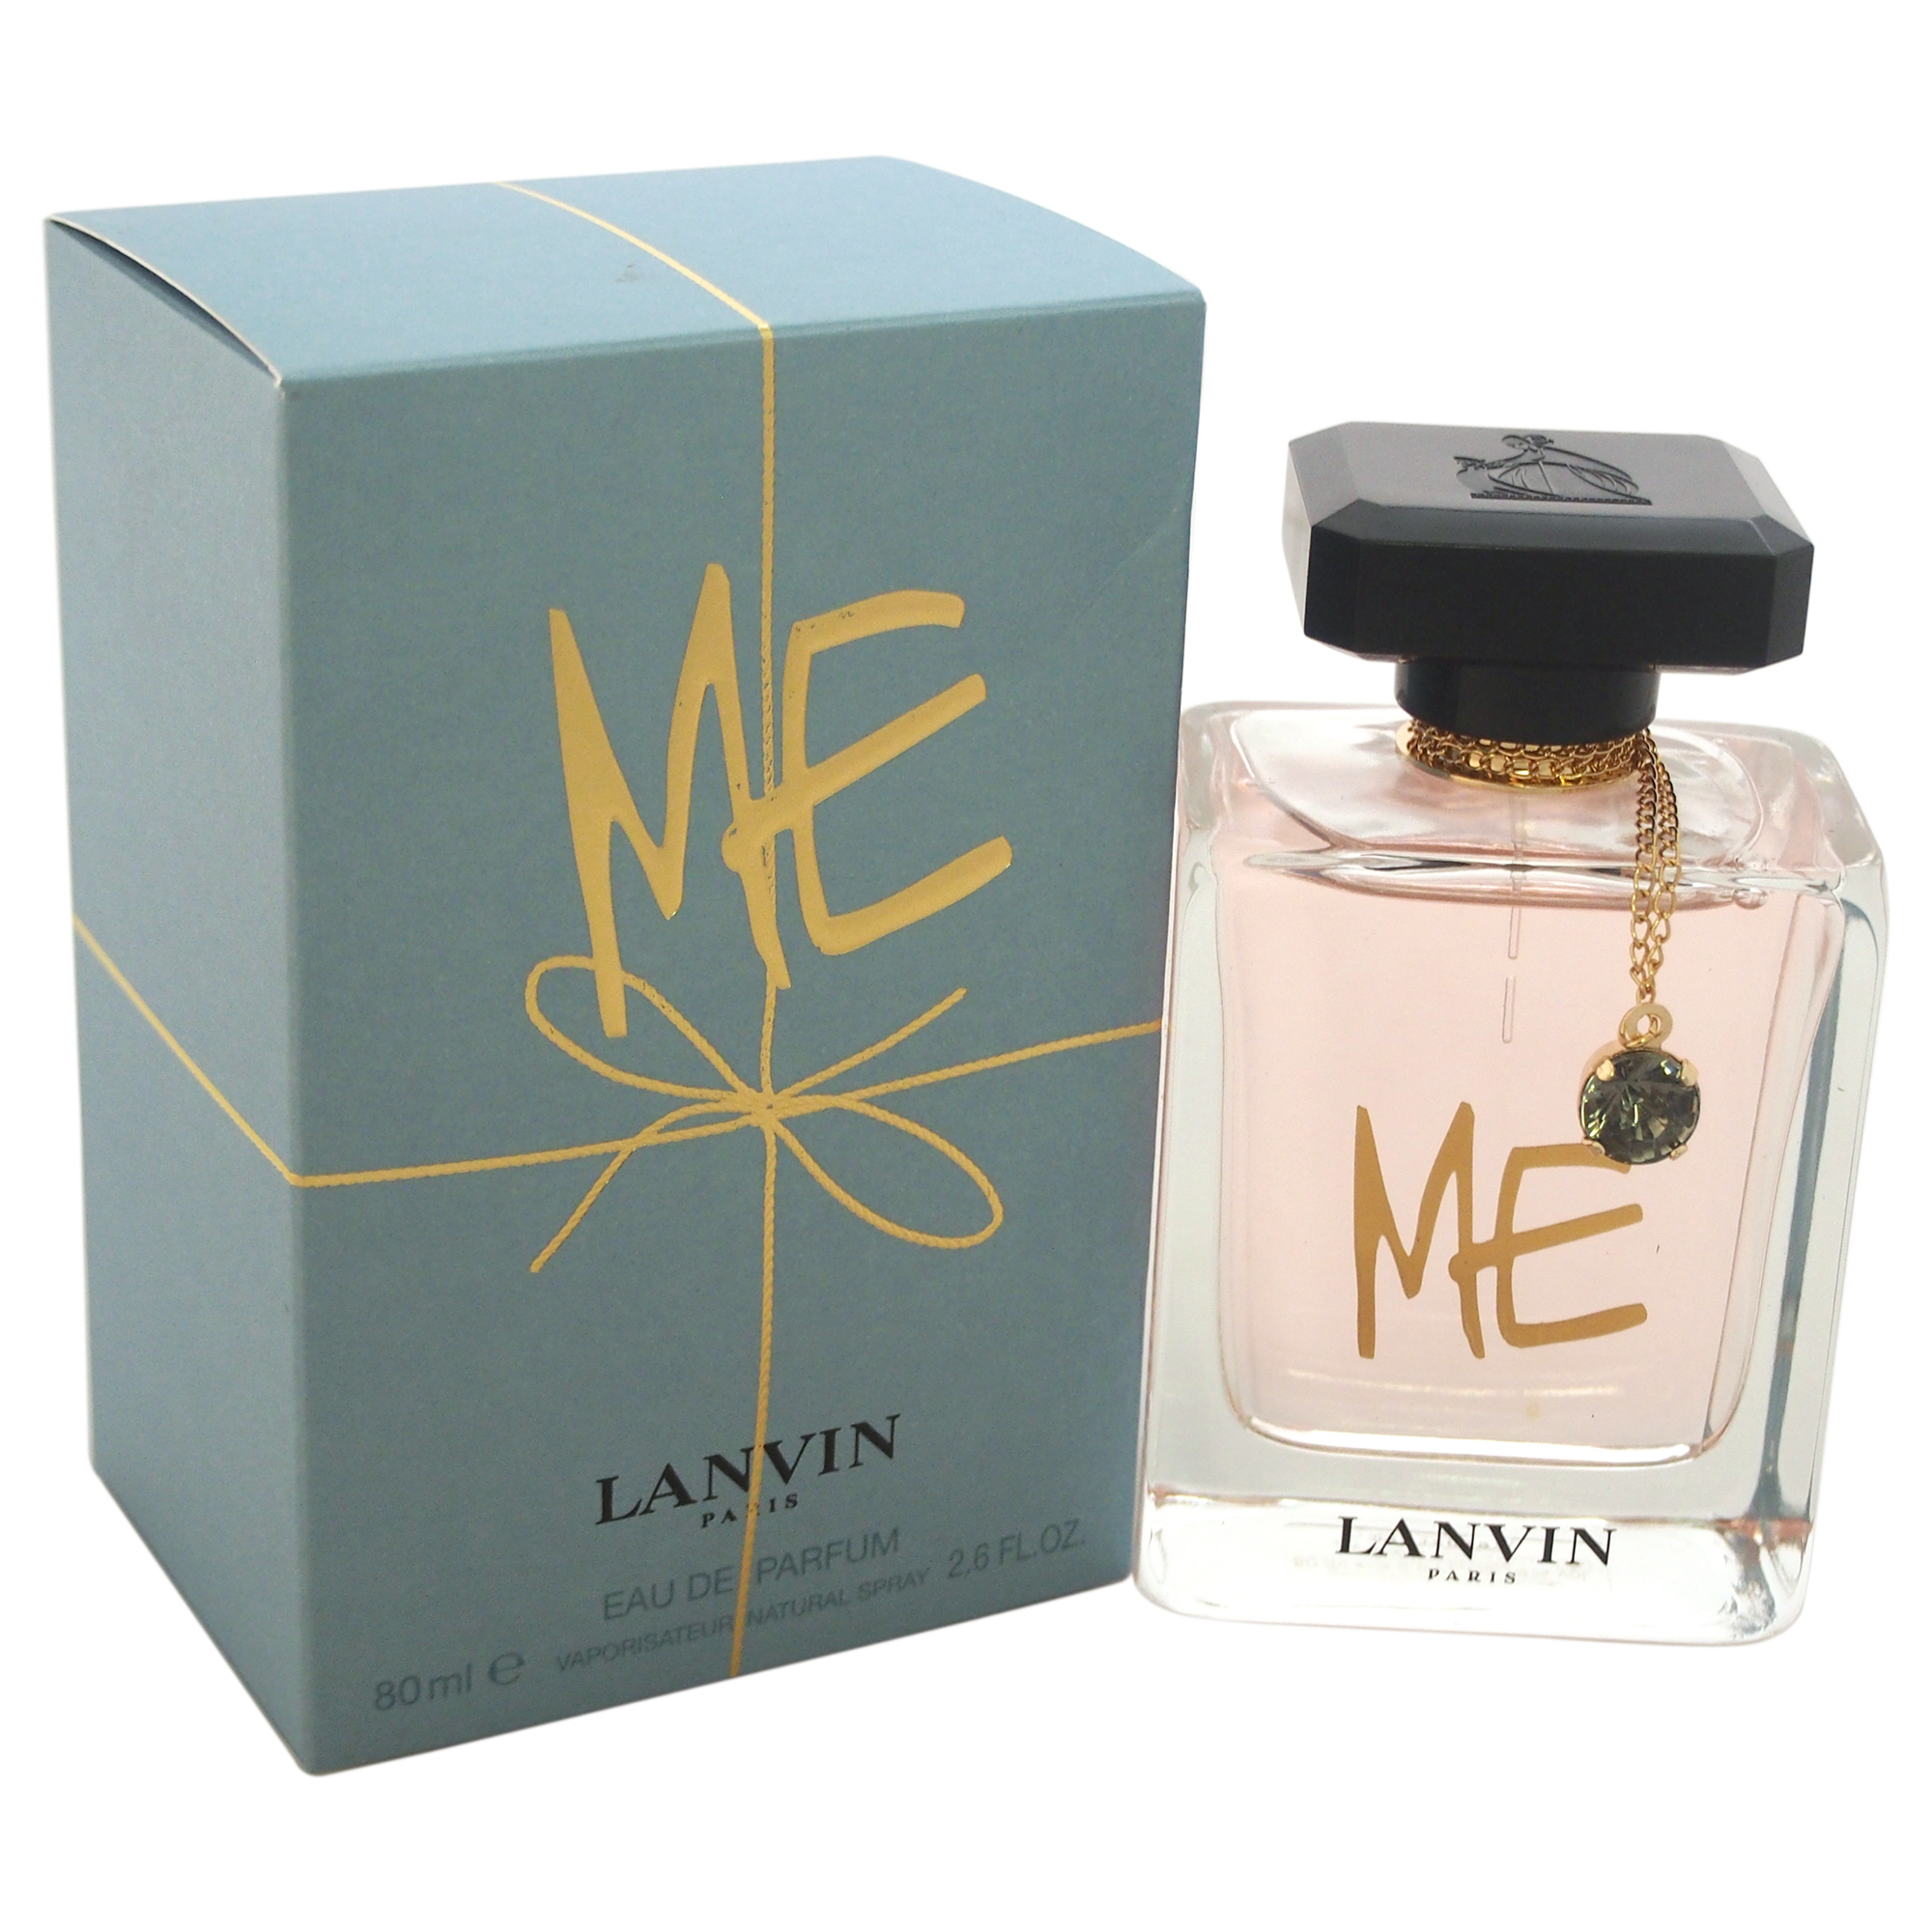 Lanvin Me by Lanvin for Women - 2.6 oz EDP Spray